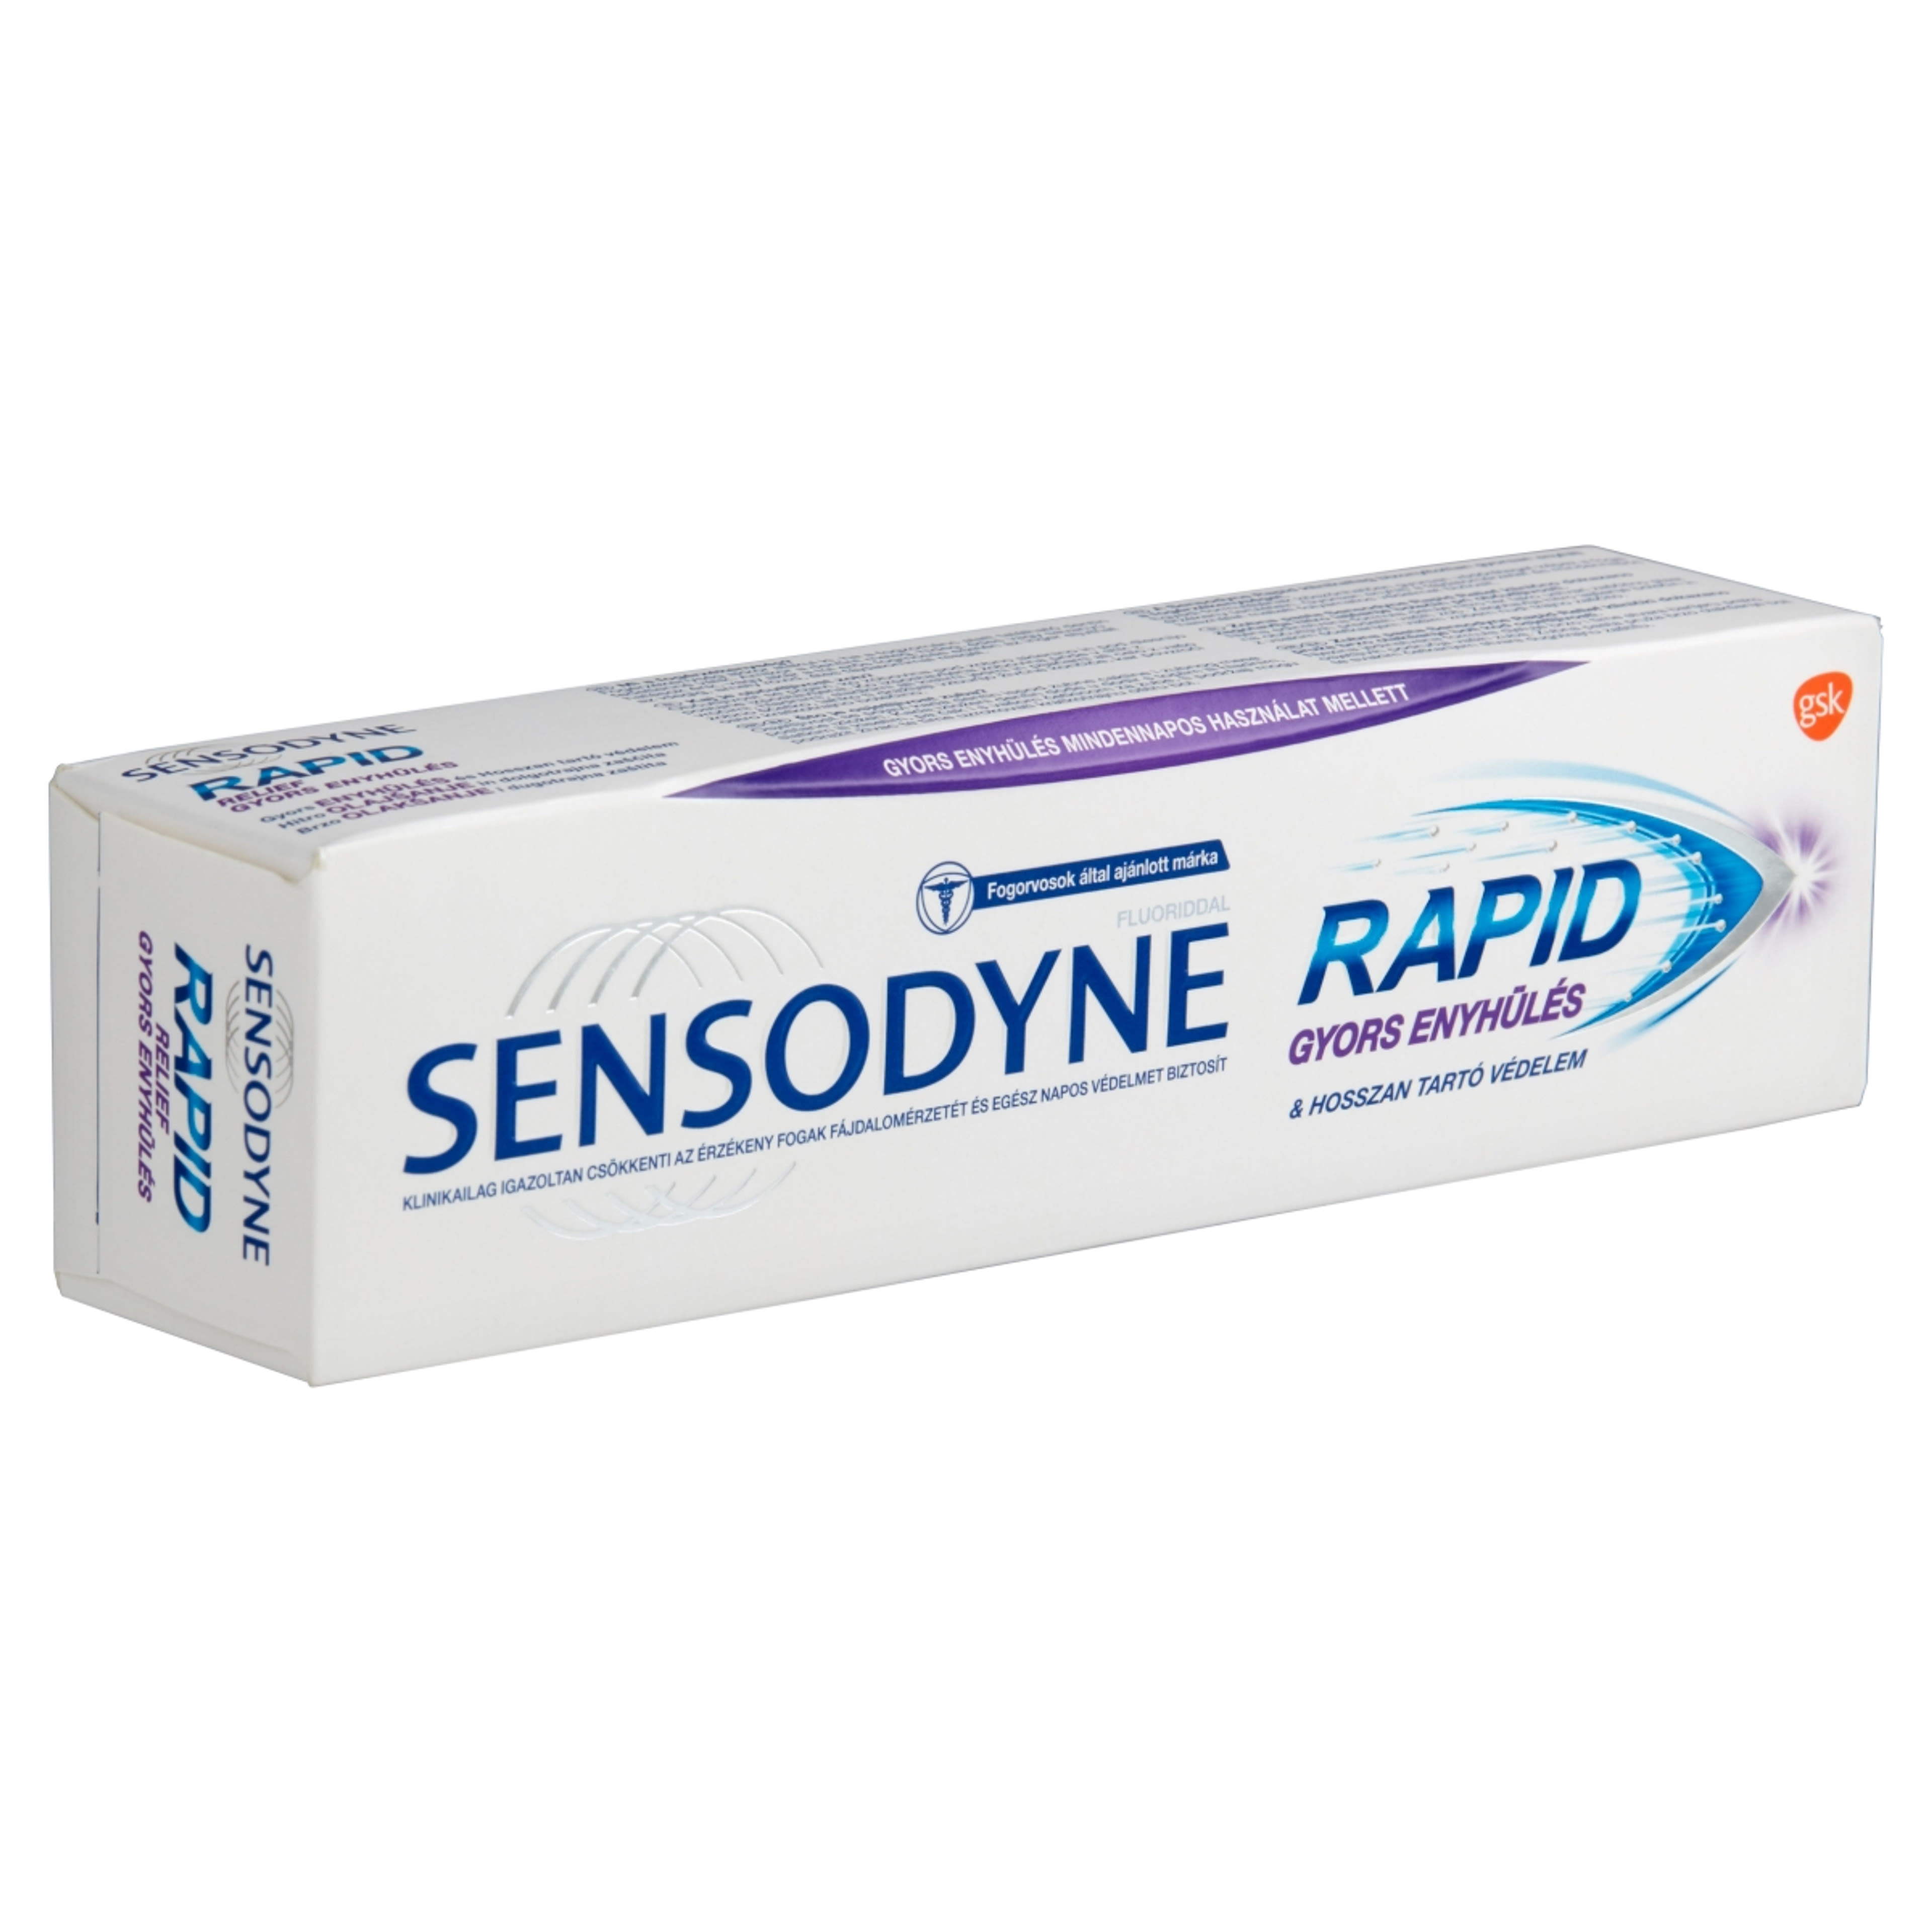 Sensodyne Rapid fogkrém - 75 ml-2